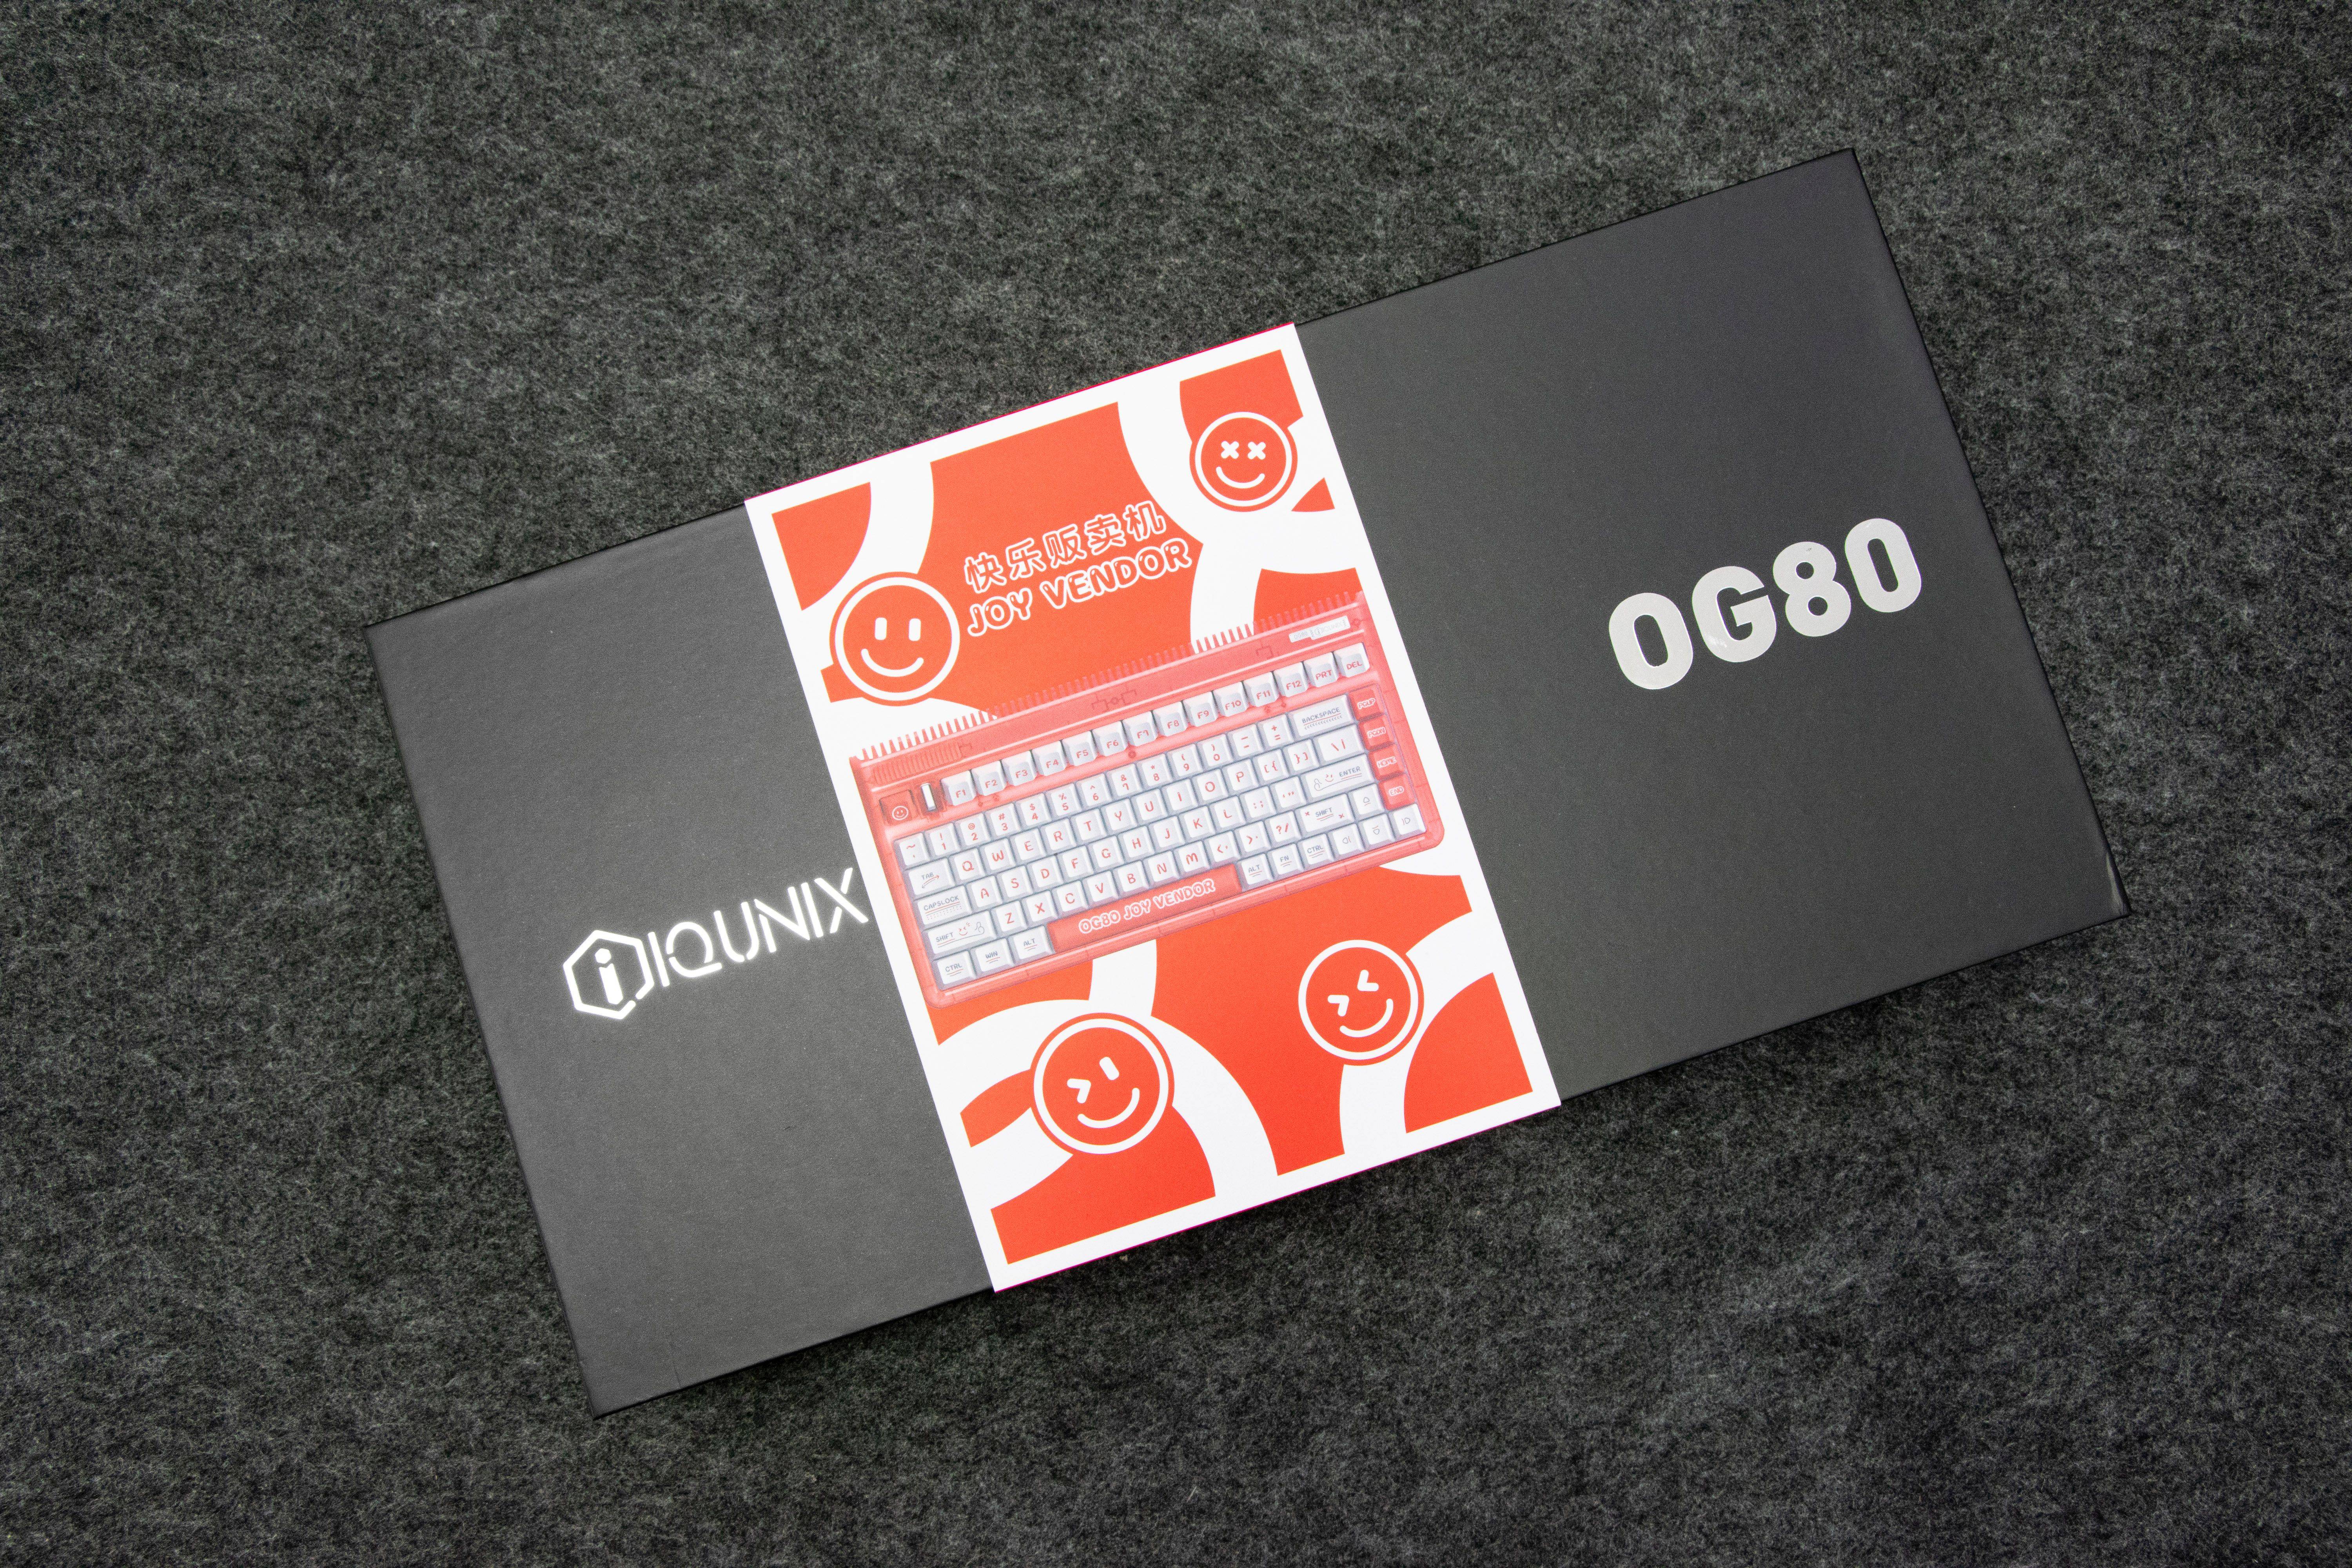 夏天打开IQUNIX OG80 快乐贩卖机的正确方法